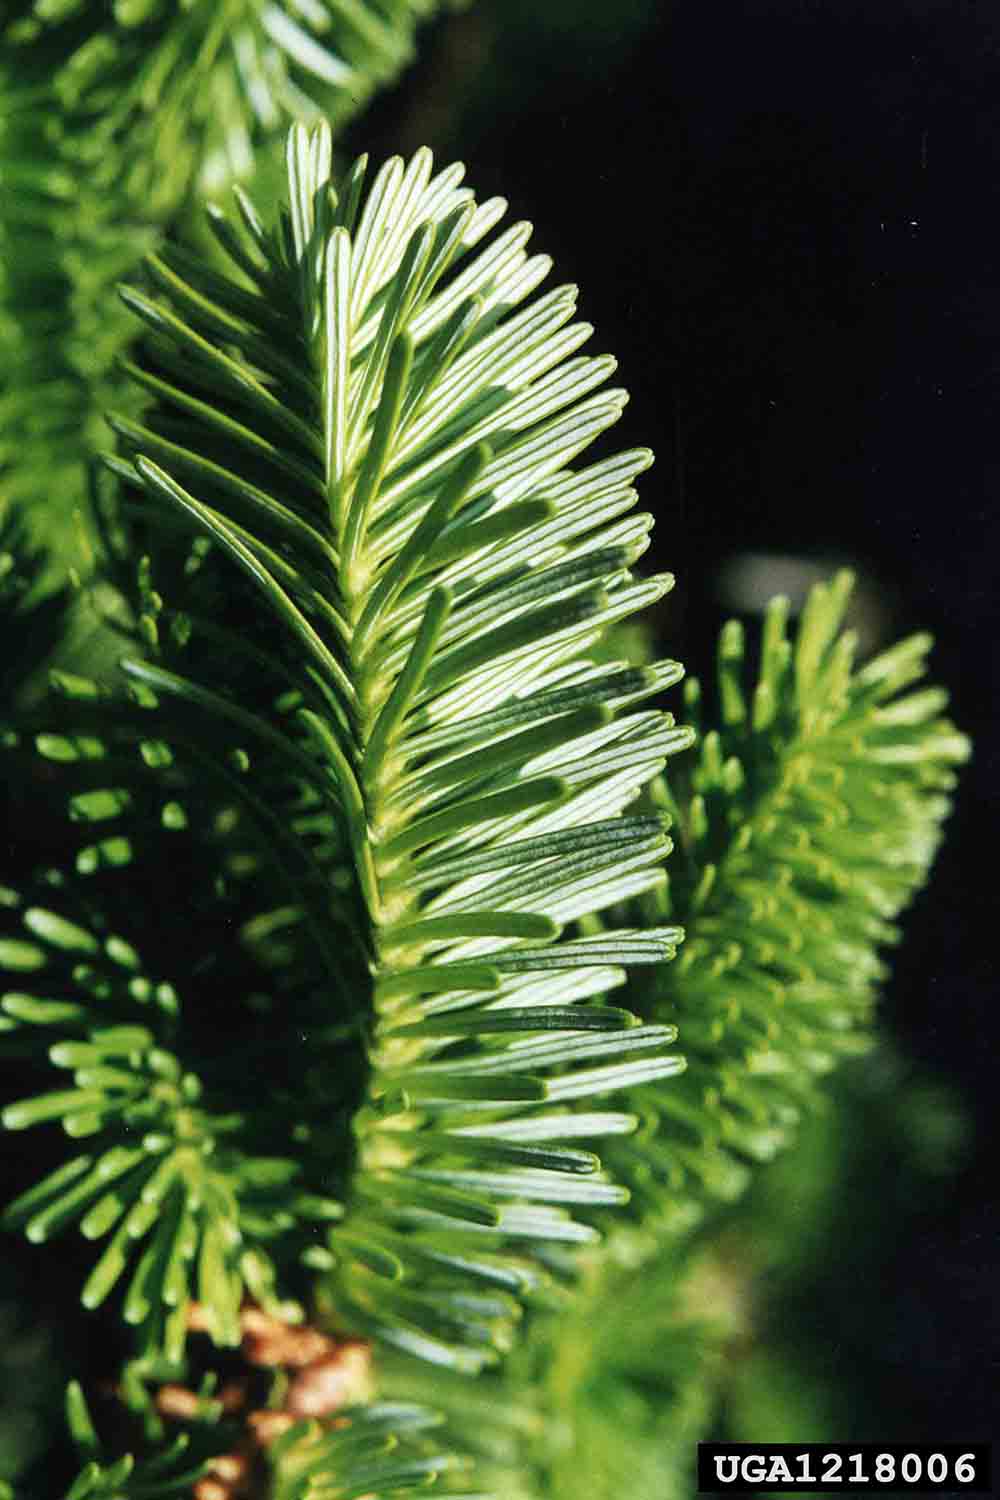 Fraser fir needles, 3/4" long and flat